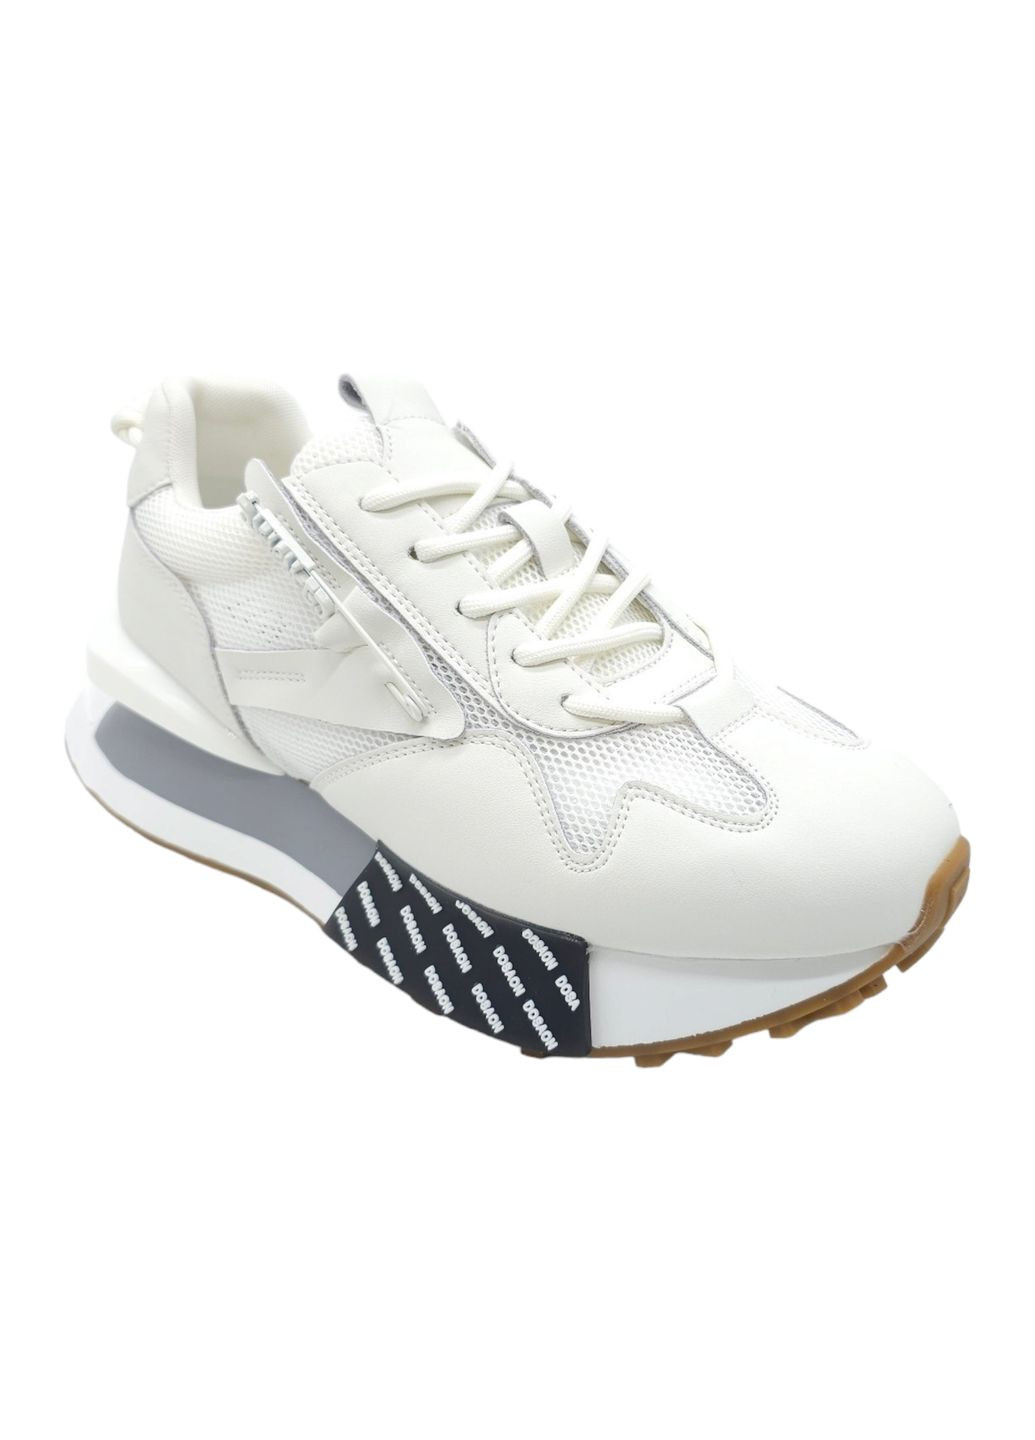 Білі всесезонні жіночі кросівки білі шкіряні l-12-44 23 см (р) Lonza